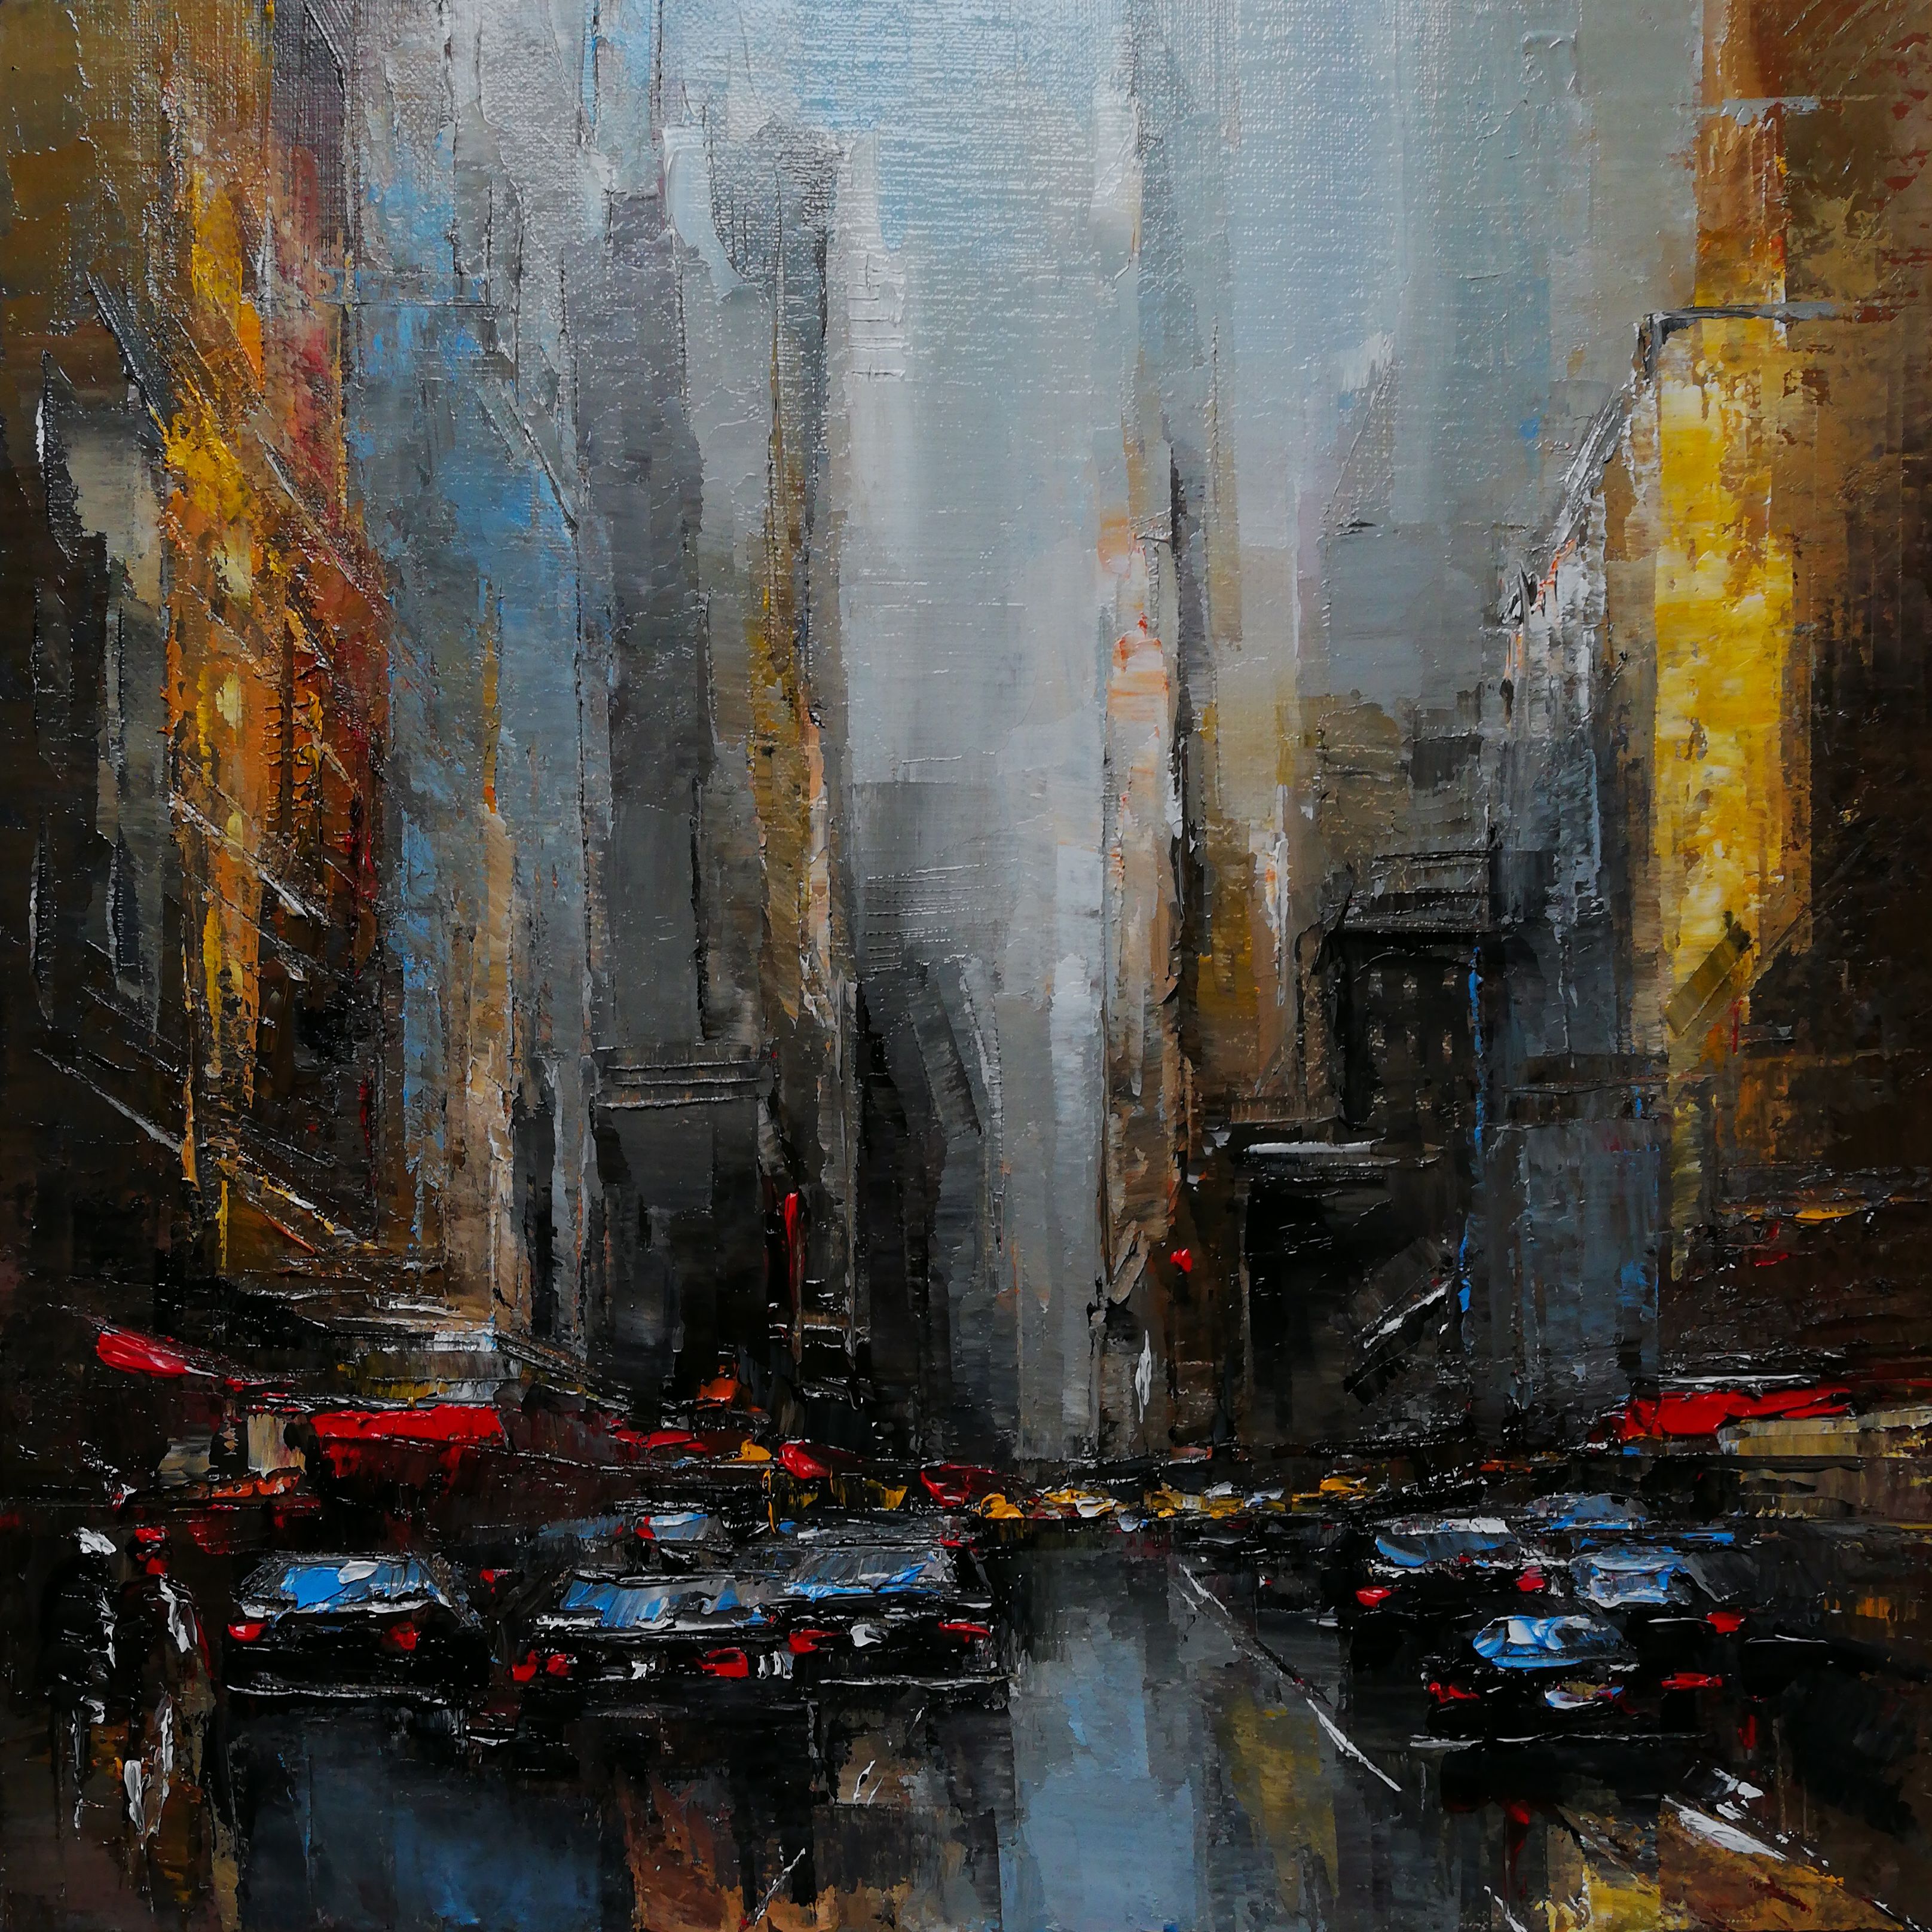 Cuadro de Philippe Meslin "Manhattan traffic Huile sur lin", es un óleo figurativo coloreado de una escena callejera de Manhattan.